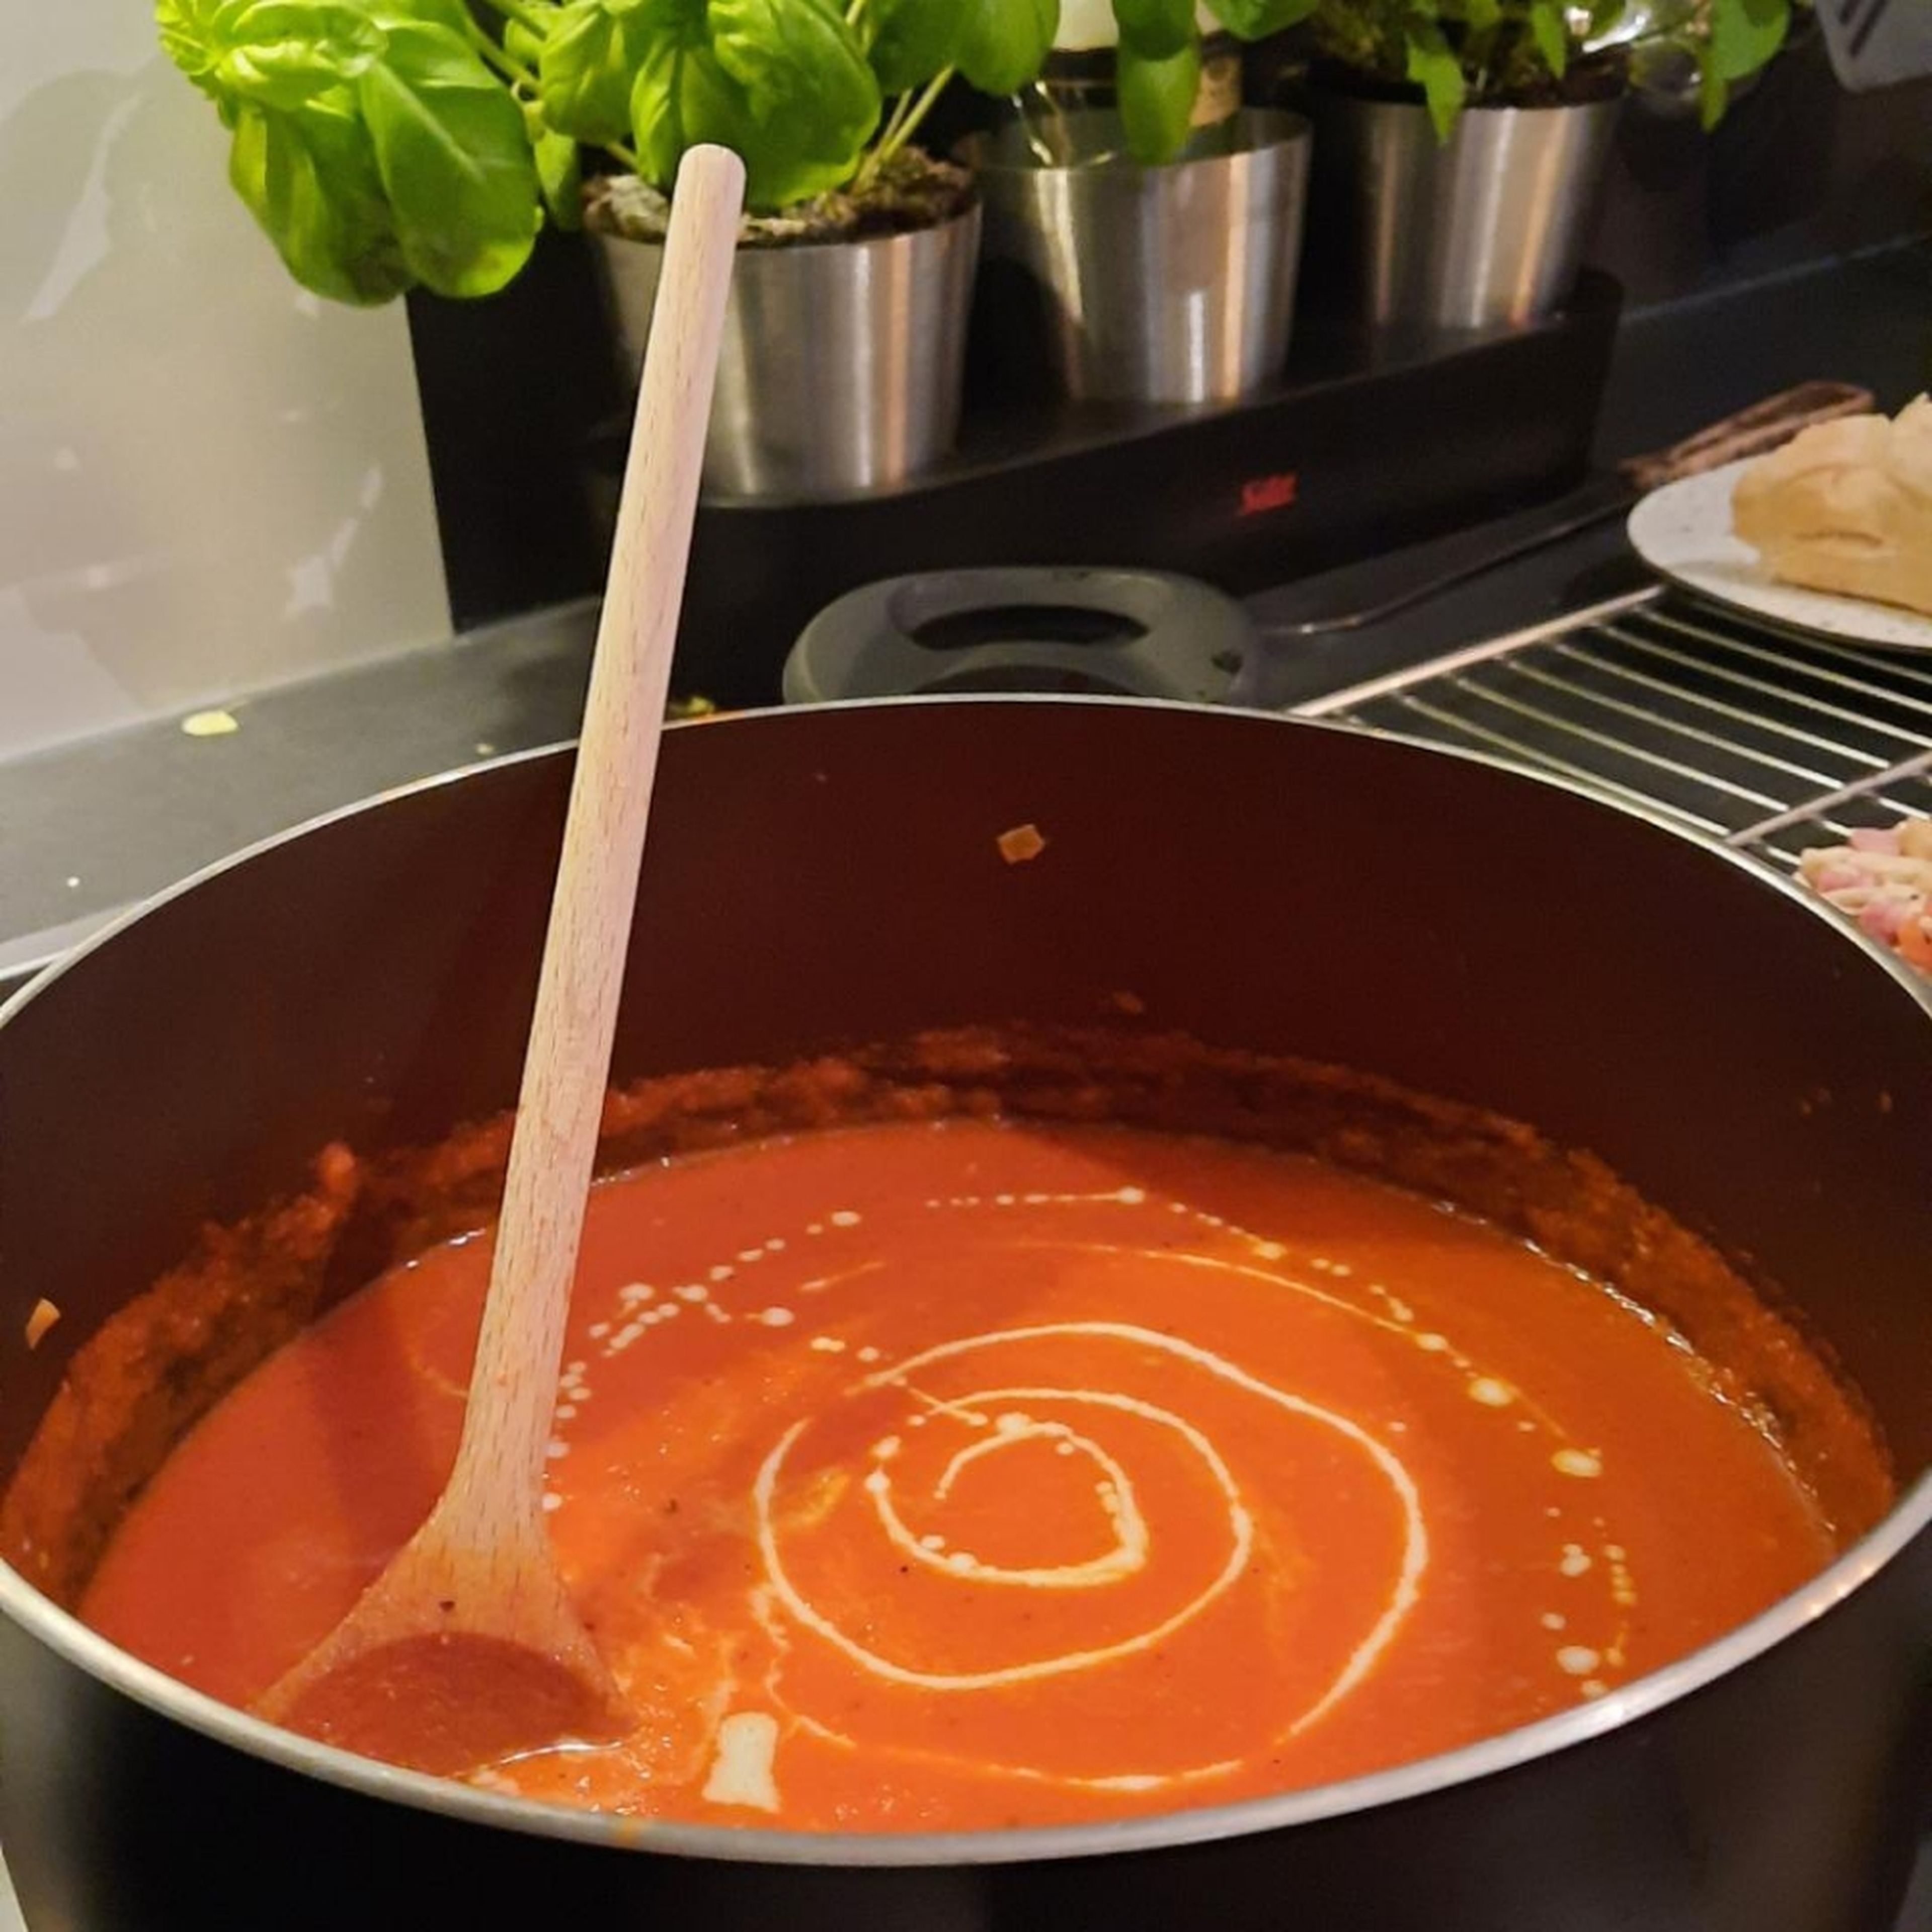 Sahne zu der Suppe geben und alles gut verrühren. Suppe in Suppenschüsseln füllen und mit Sahne, Basilikum und Croutons servieren.